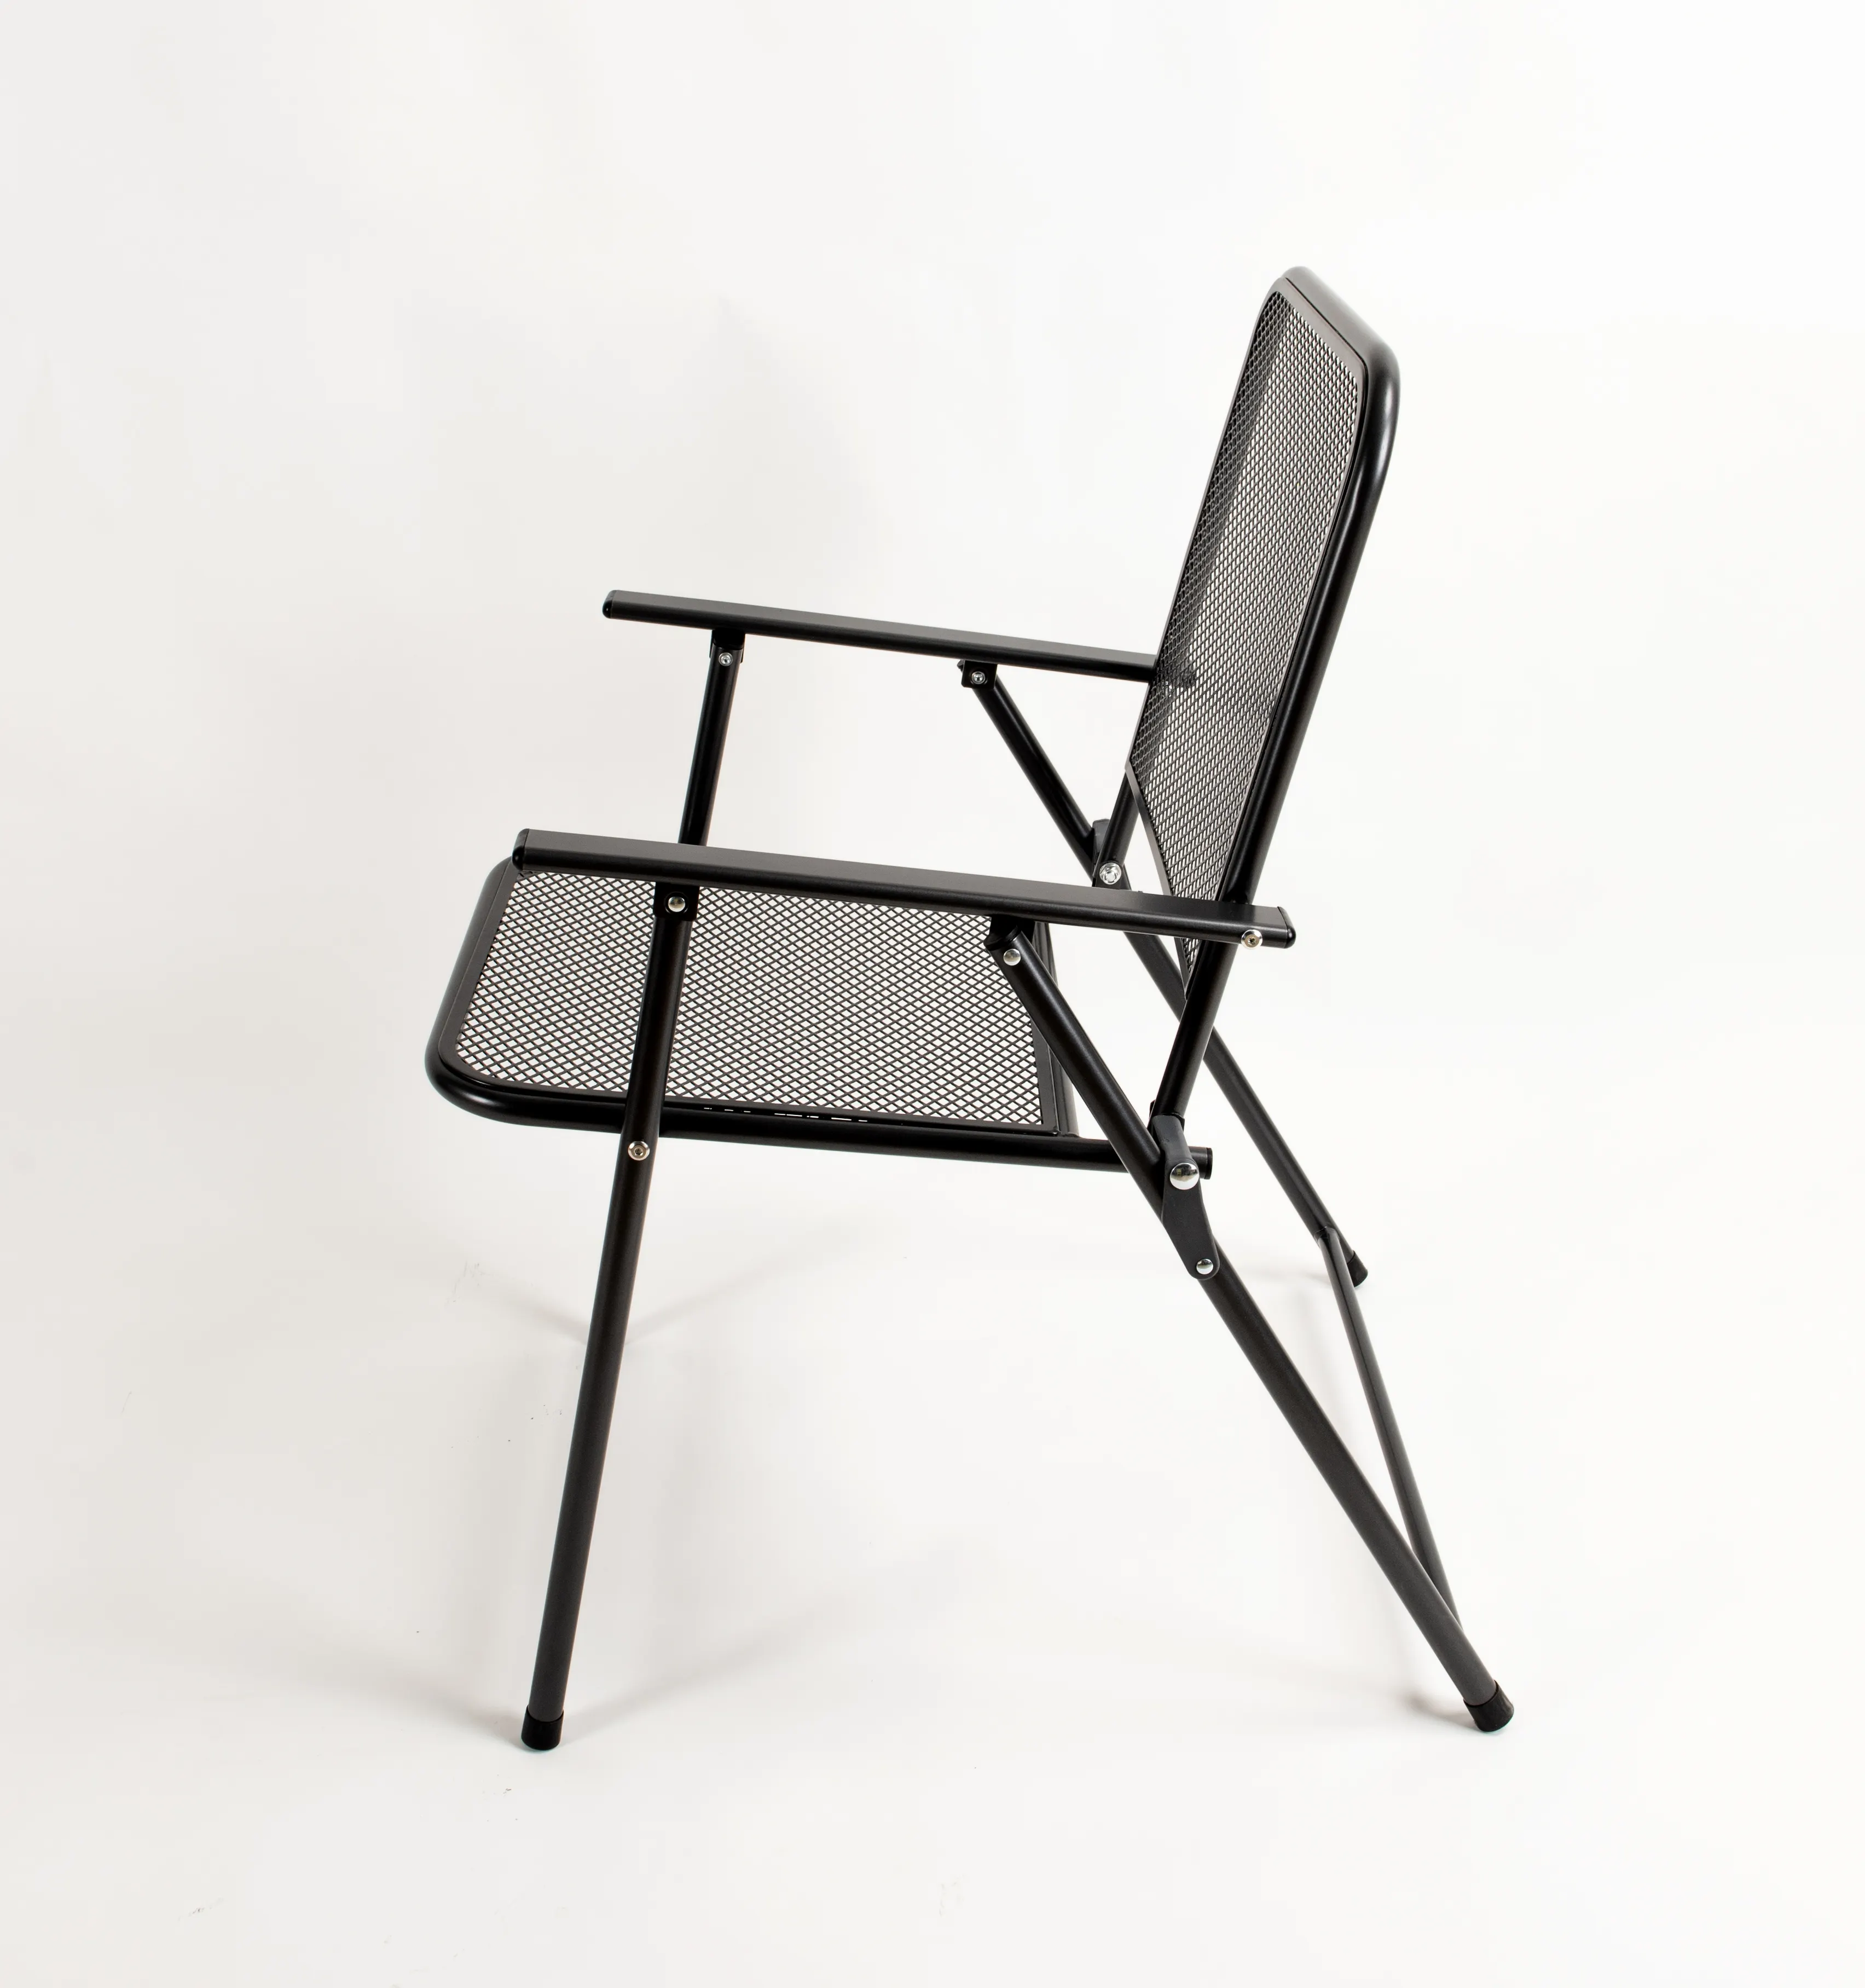 Metal Mesh Pátio Cadeiras, Folding, Gramado, Encosto ao ar livre, Jantando Cadeiras pó revestimento ferro net jardim mobiliário